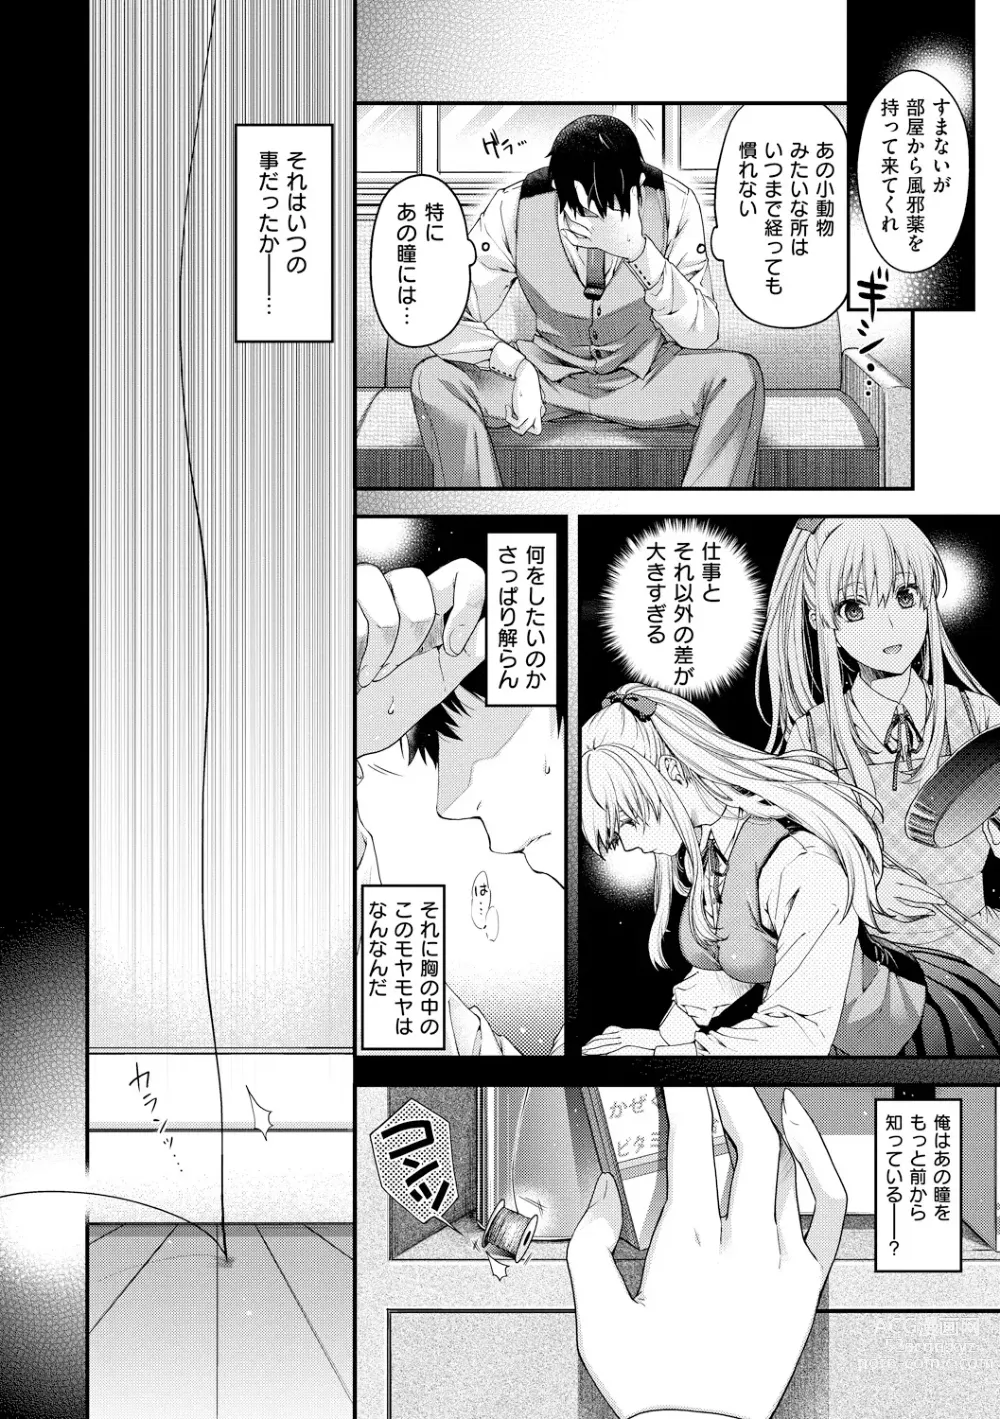 Page 14 of manga Chigiri to Musubi no Houteishiki